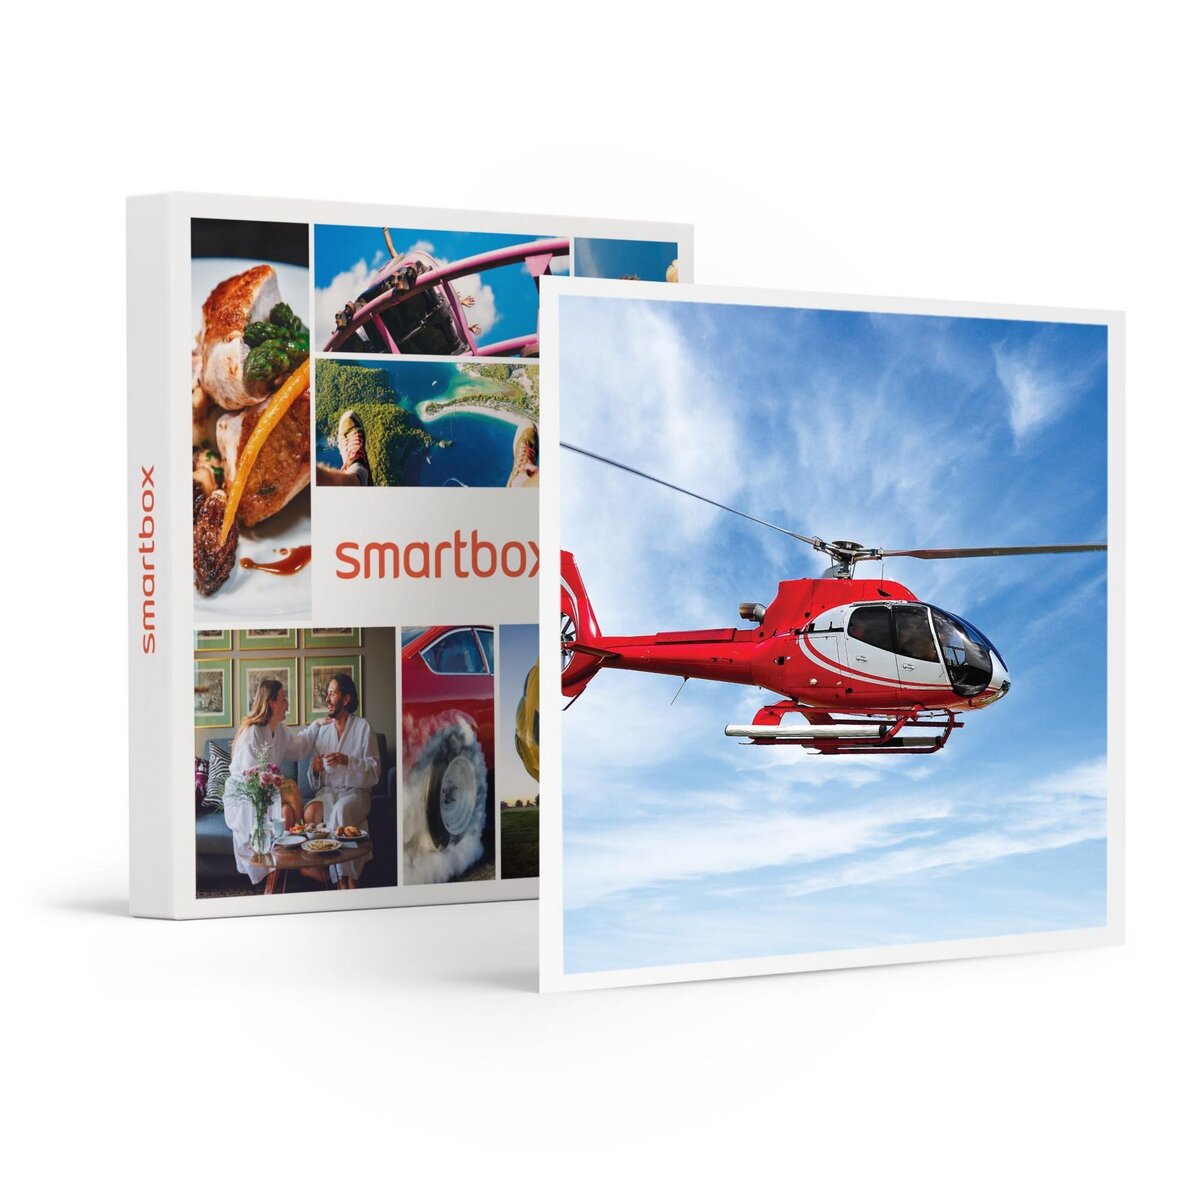 Smartbox Vol en hélicoptère de 9 min pour 3 personnes près de Montpellier - Coffret Cadeau Sport & Aventure